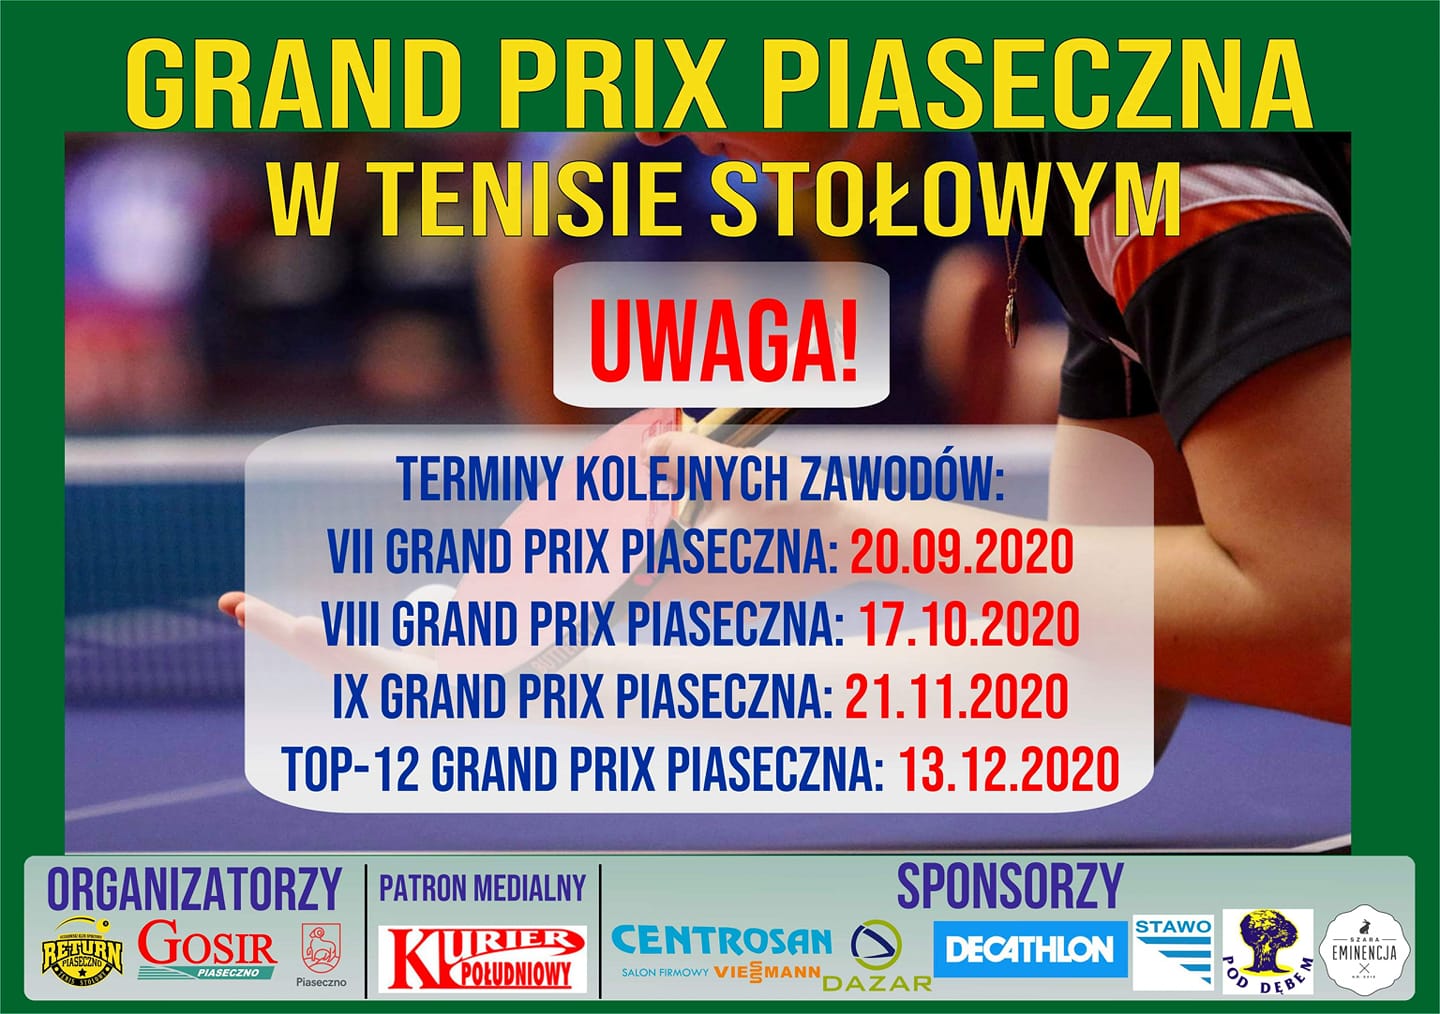 Plakat turnieju Grand Prix Piaseczna w tenisie stołowym 2019/2020 - TOP 12